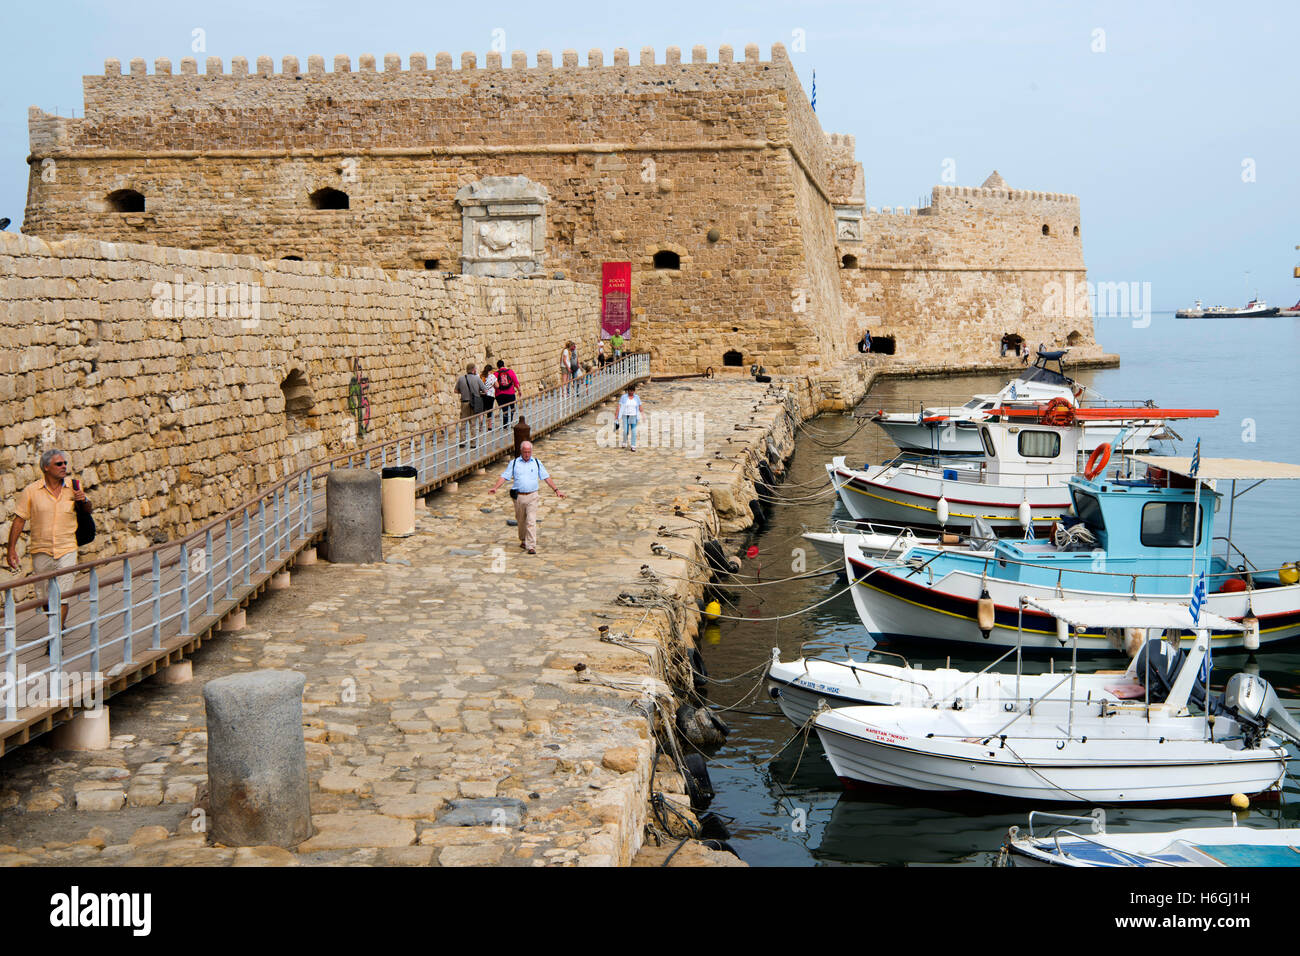 Griechenland, Kreta, Heraklion, venezianisches Kastro Koules am Fischerhafen Stock Photo